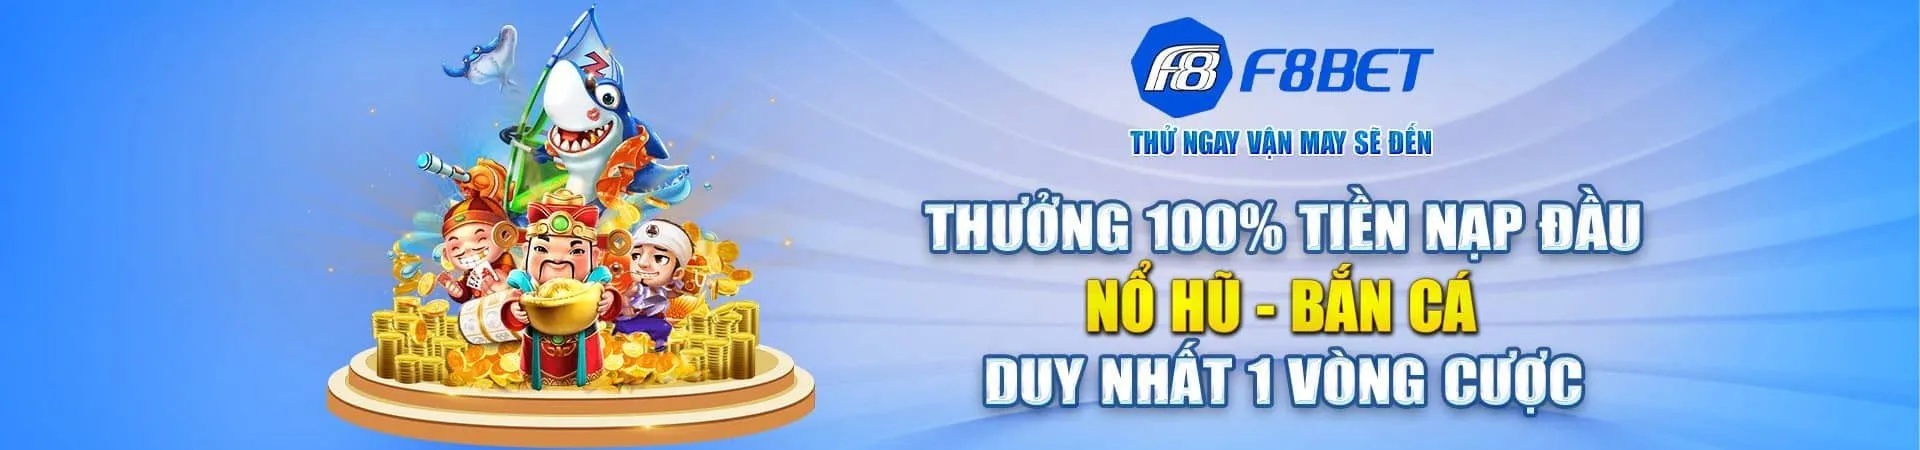 thuong-nap-dau-no-hu-ban-ca